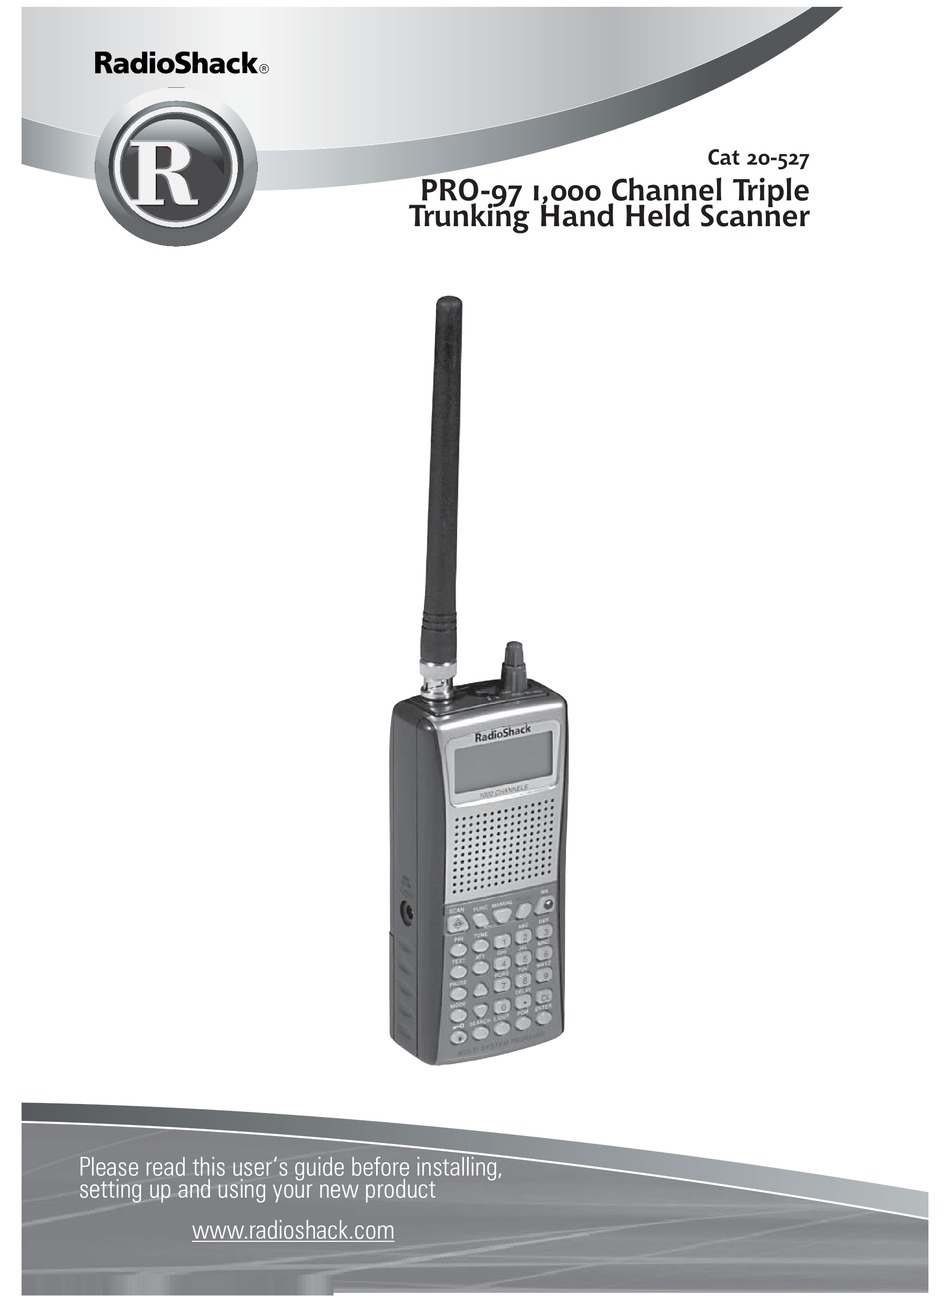 RADIO SHACK PRO-97 MANUAL Pdf Download | ManualsLib